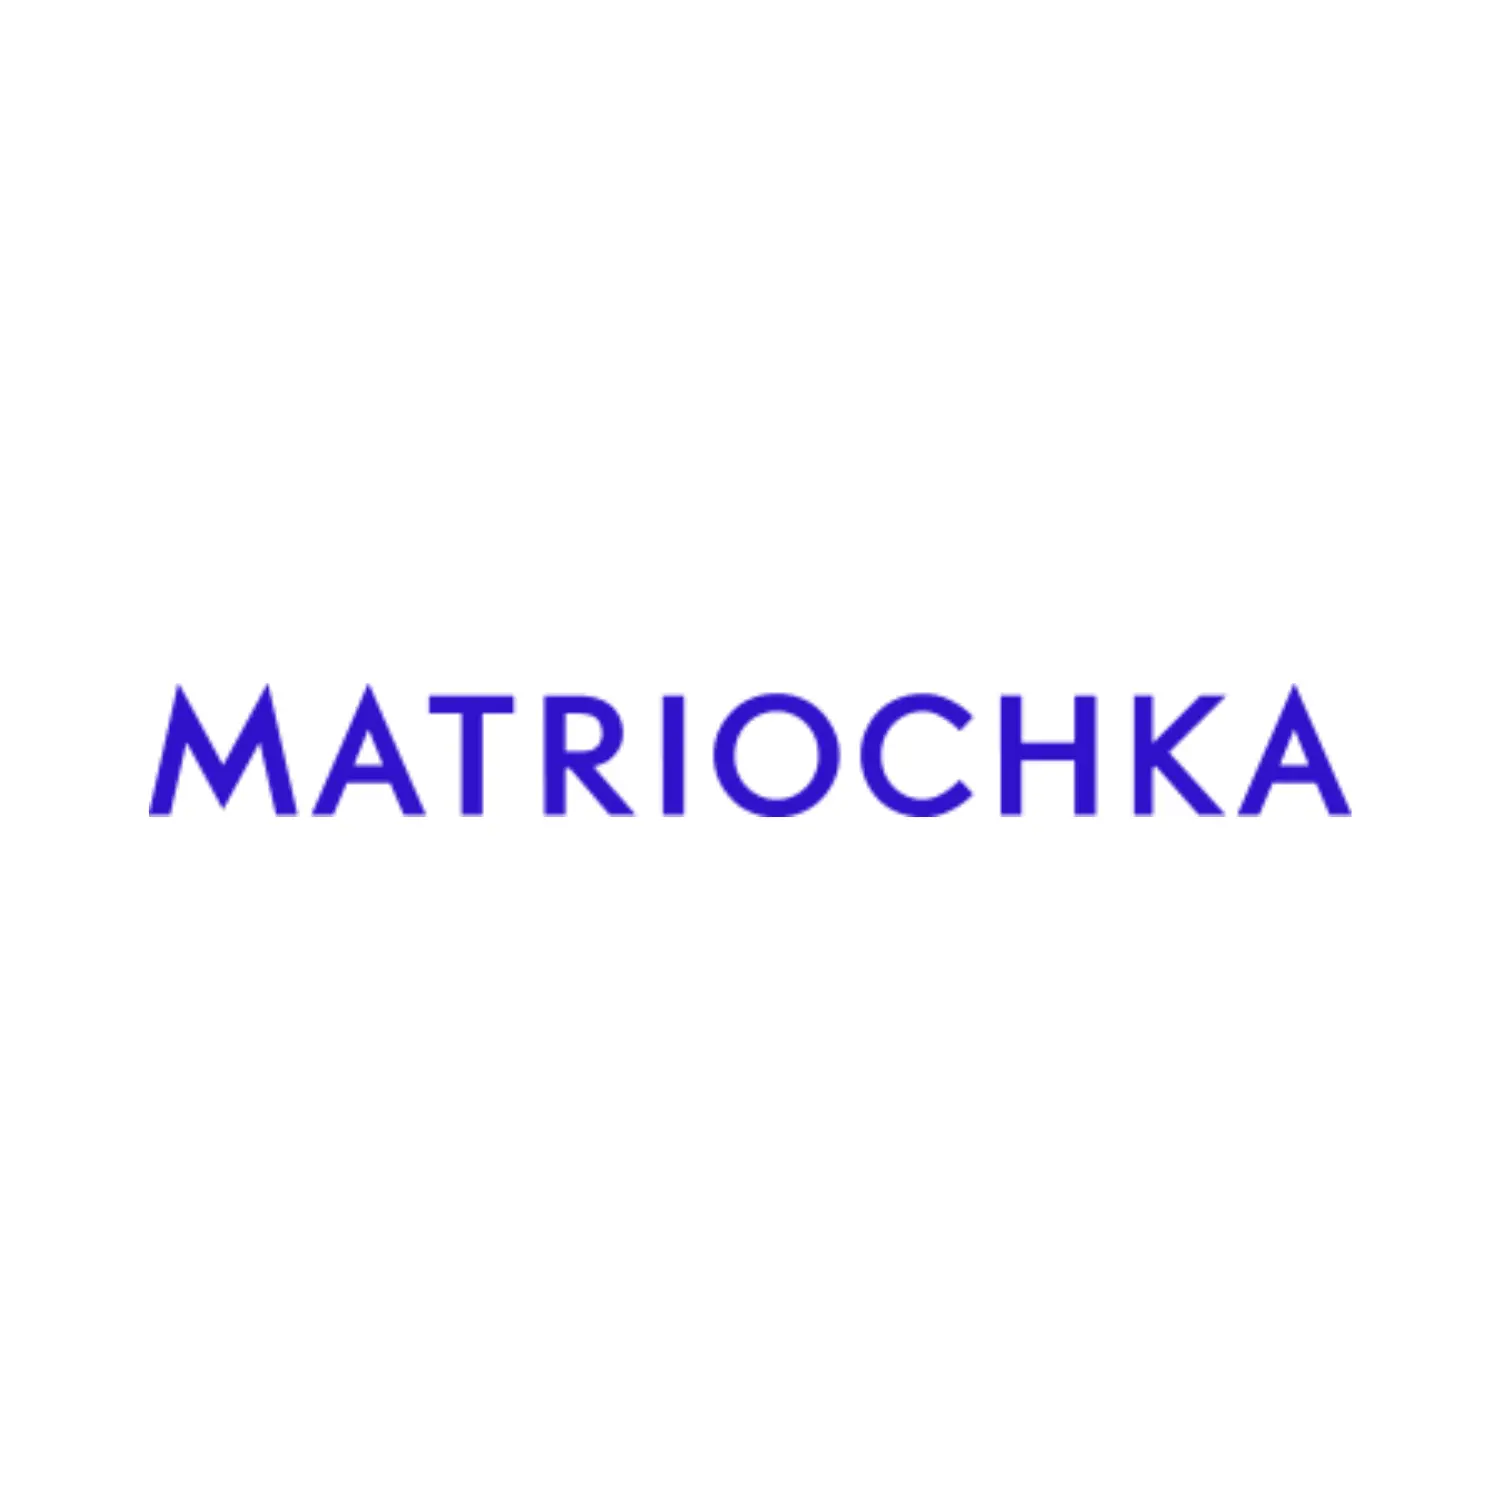 architectes-biglight-luxembourg-matriochka